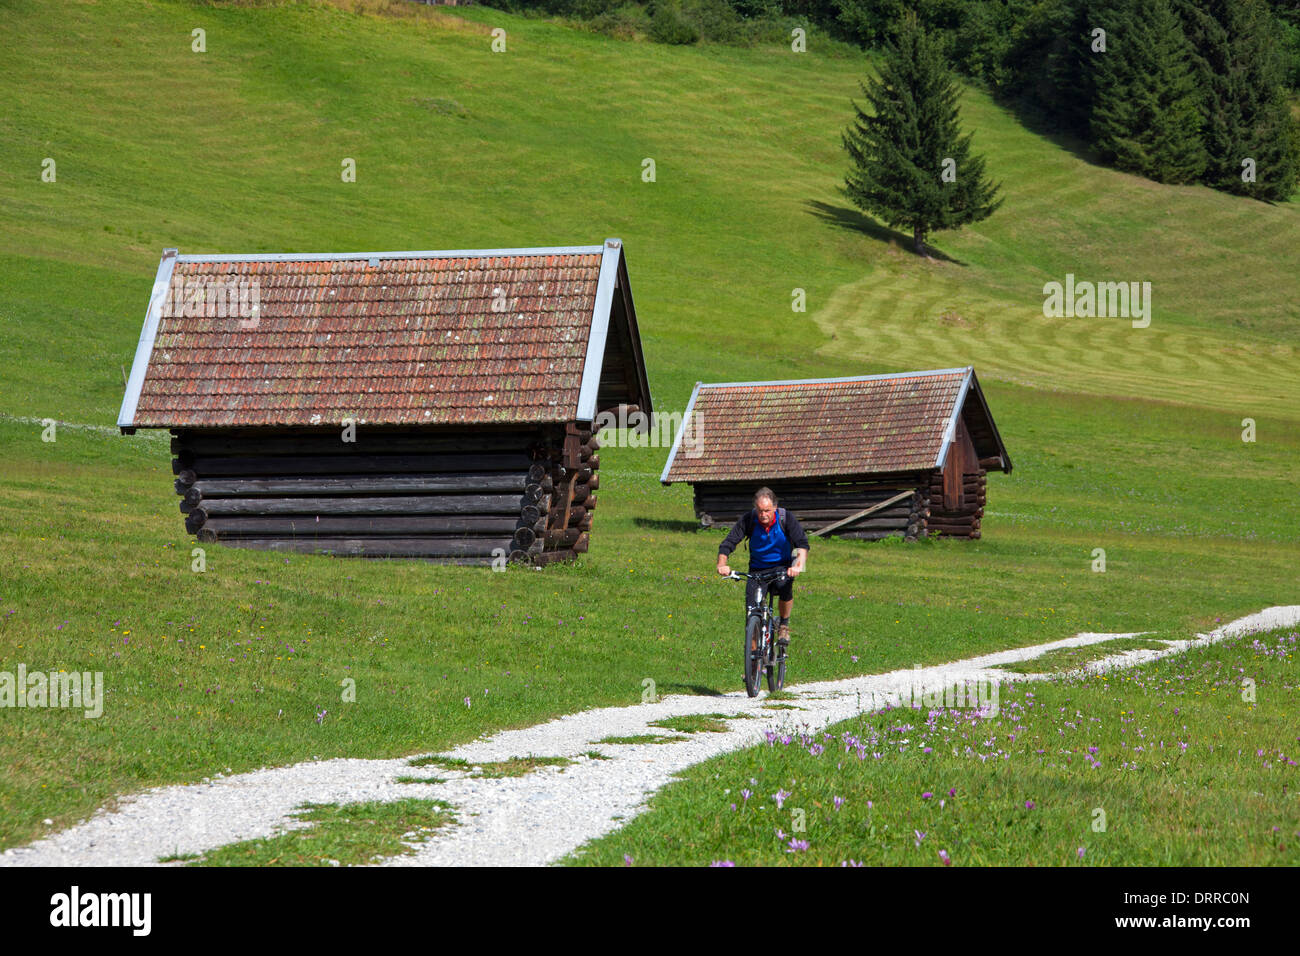 Personnes âgées / Cycliste Vélo VTT Cours des huttes de bois / greniers le long du lac Gerold / Geroldsee près de Mittenwald, Allemagne Banque D'Images